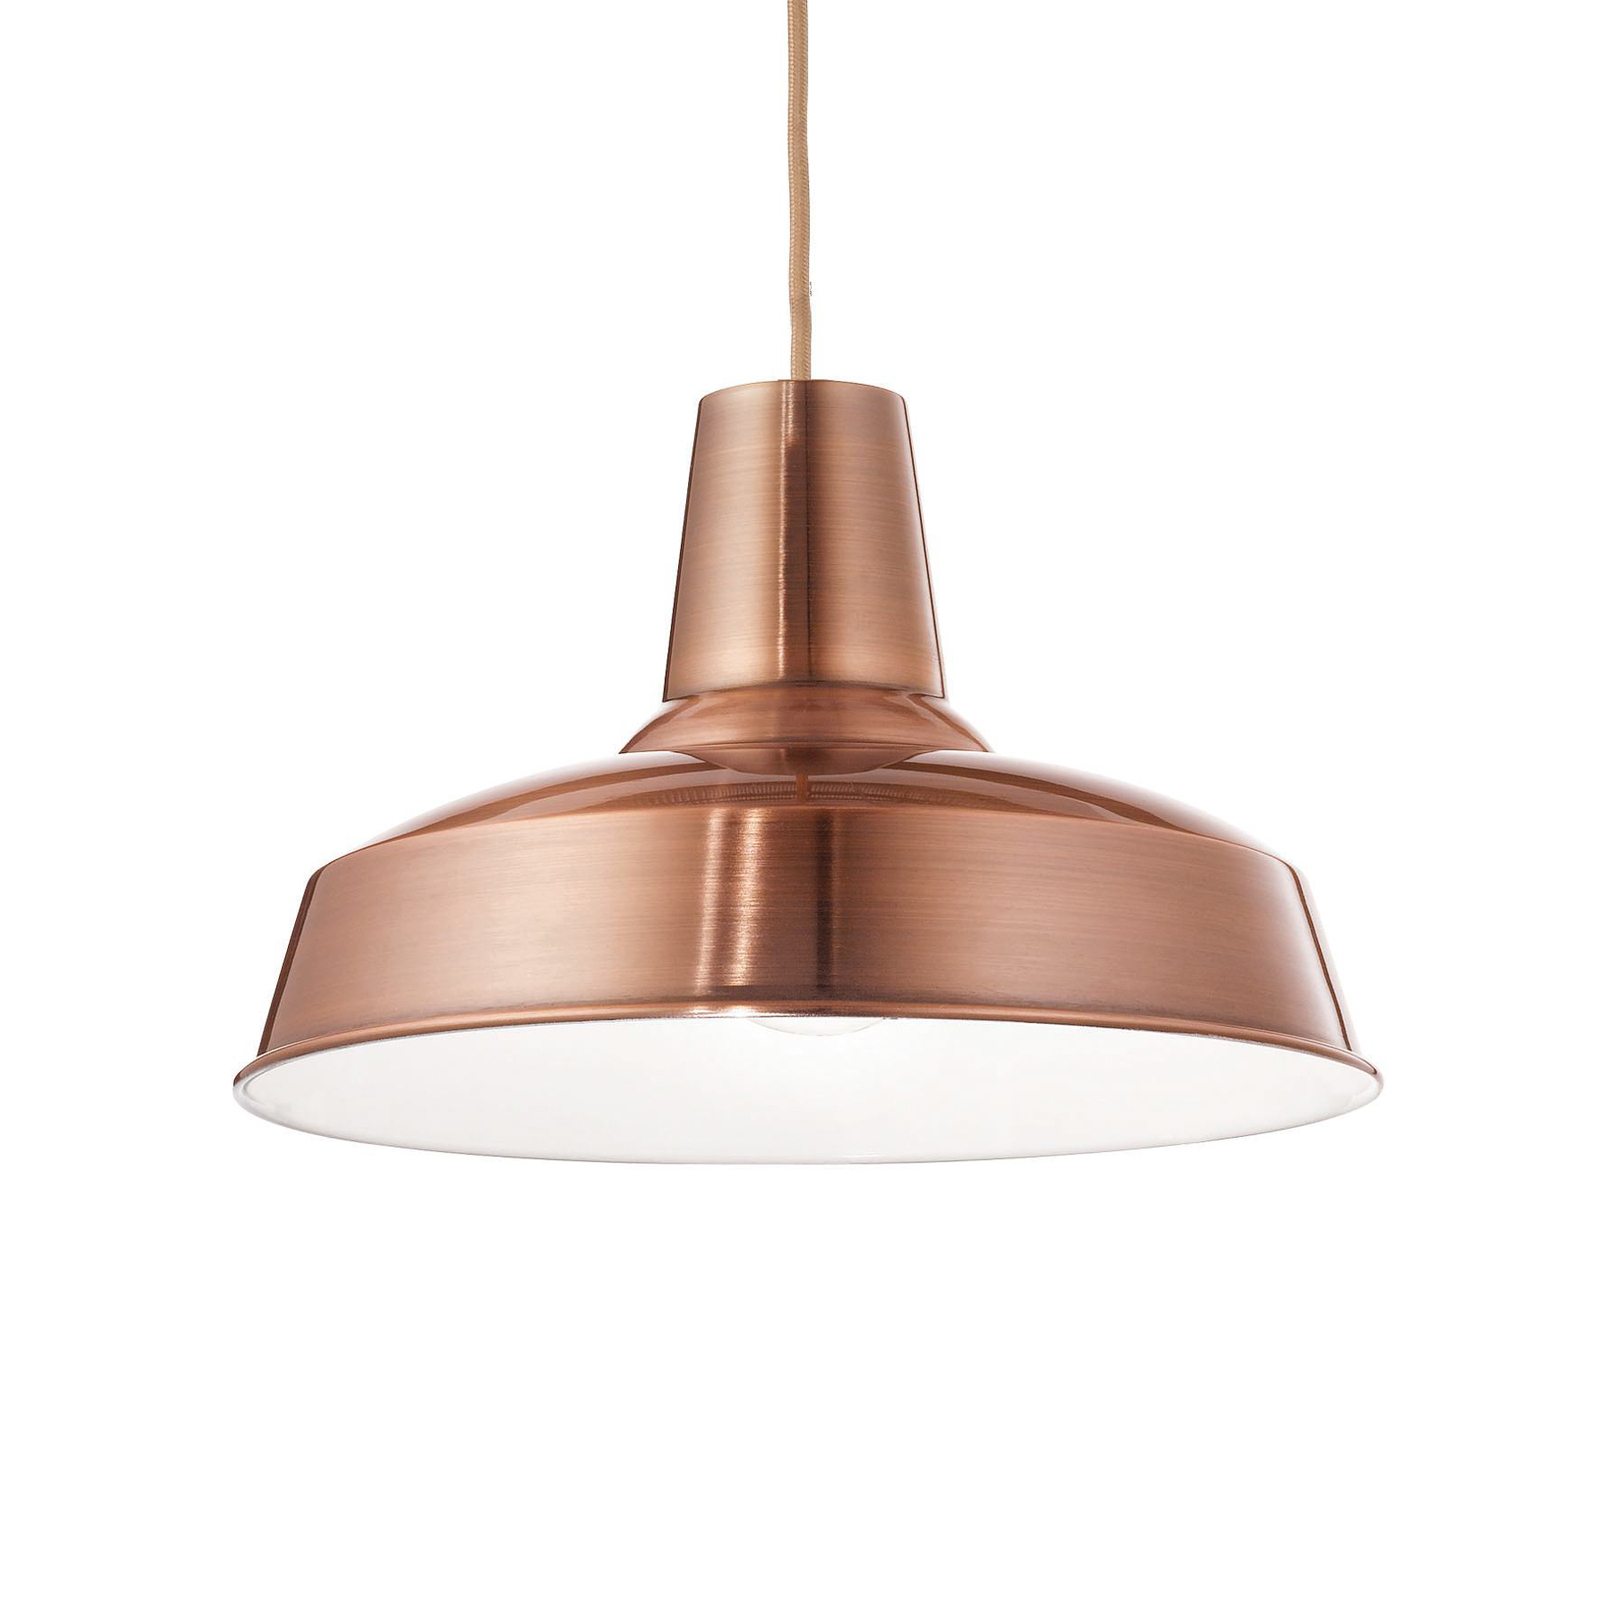 Ideal Lux Moby pendant light, copper-coloured, metal, Ø 35 cm